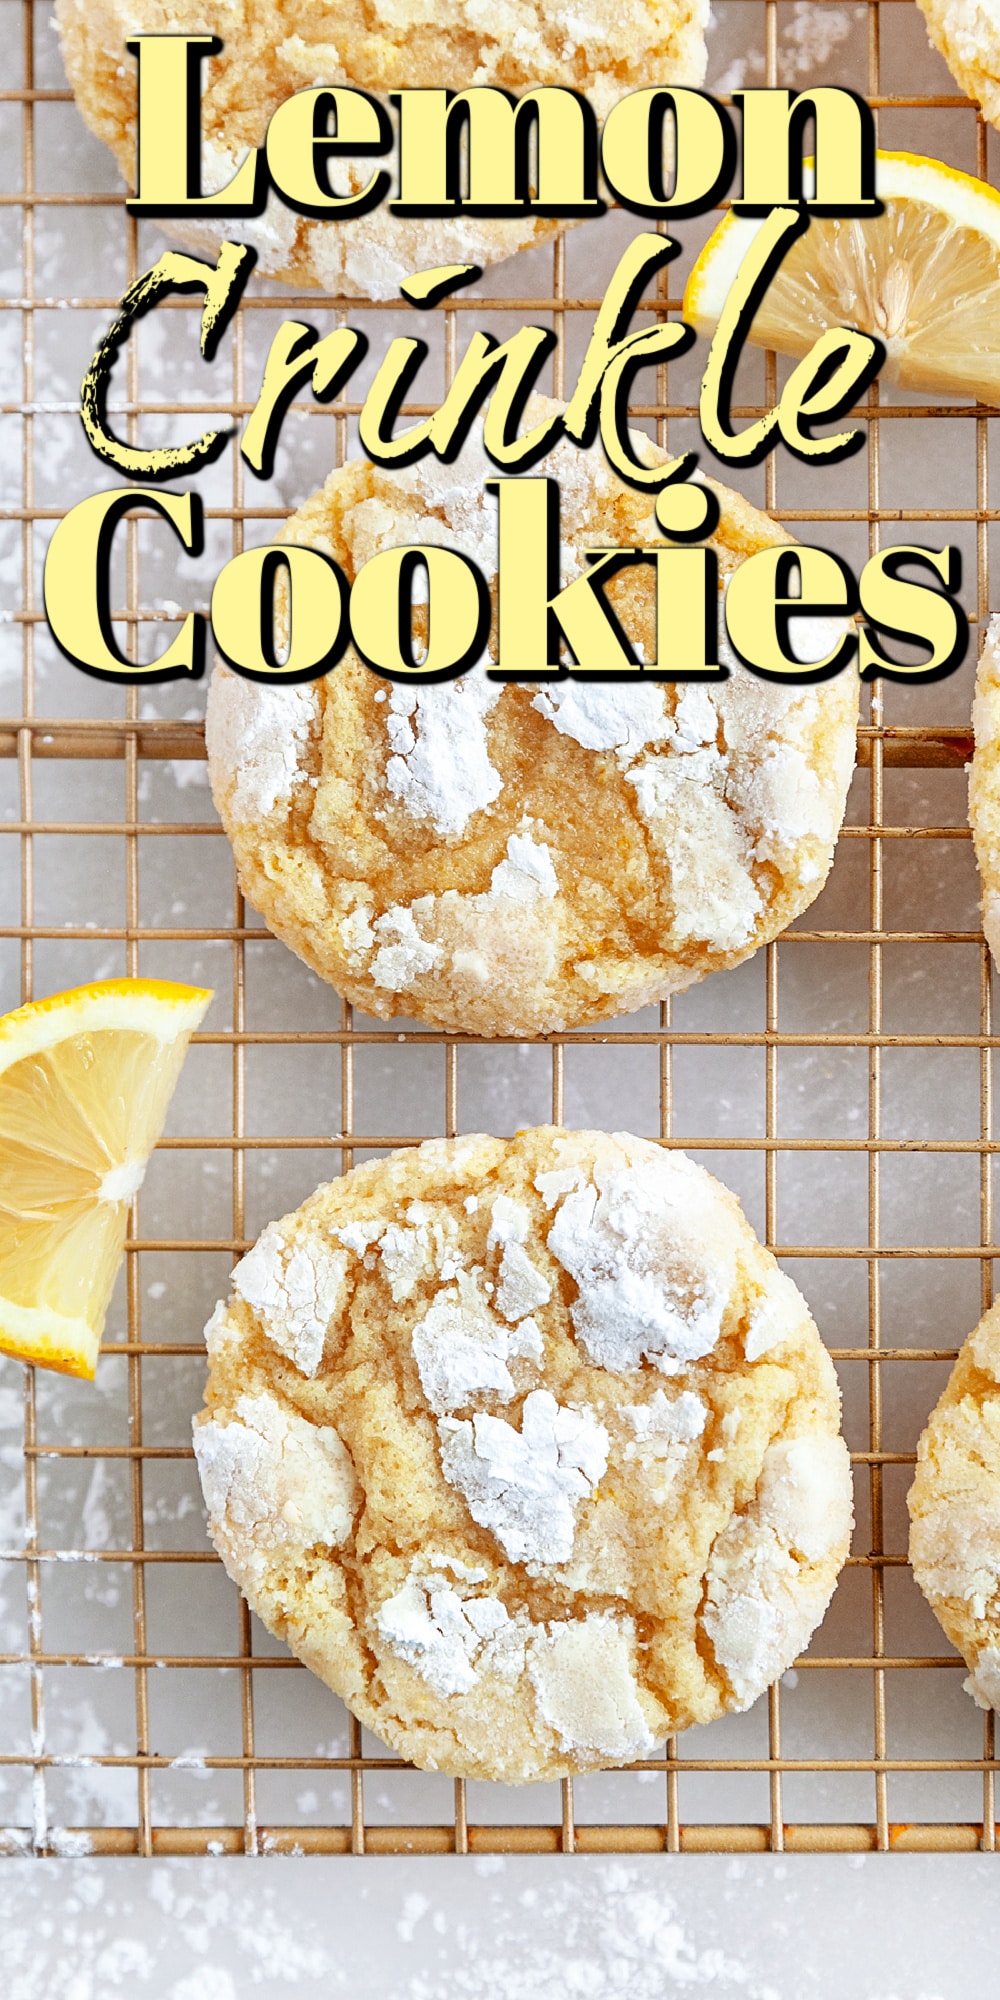 Lemon Crinkle Cookies Pin. 